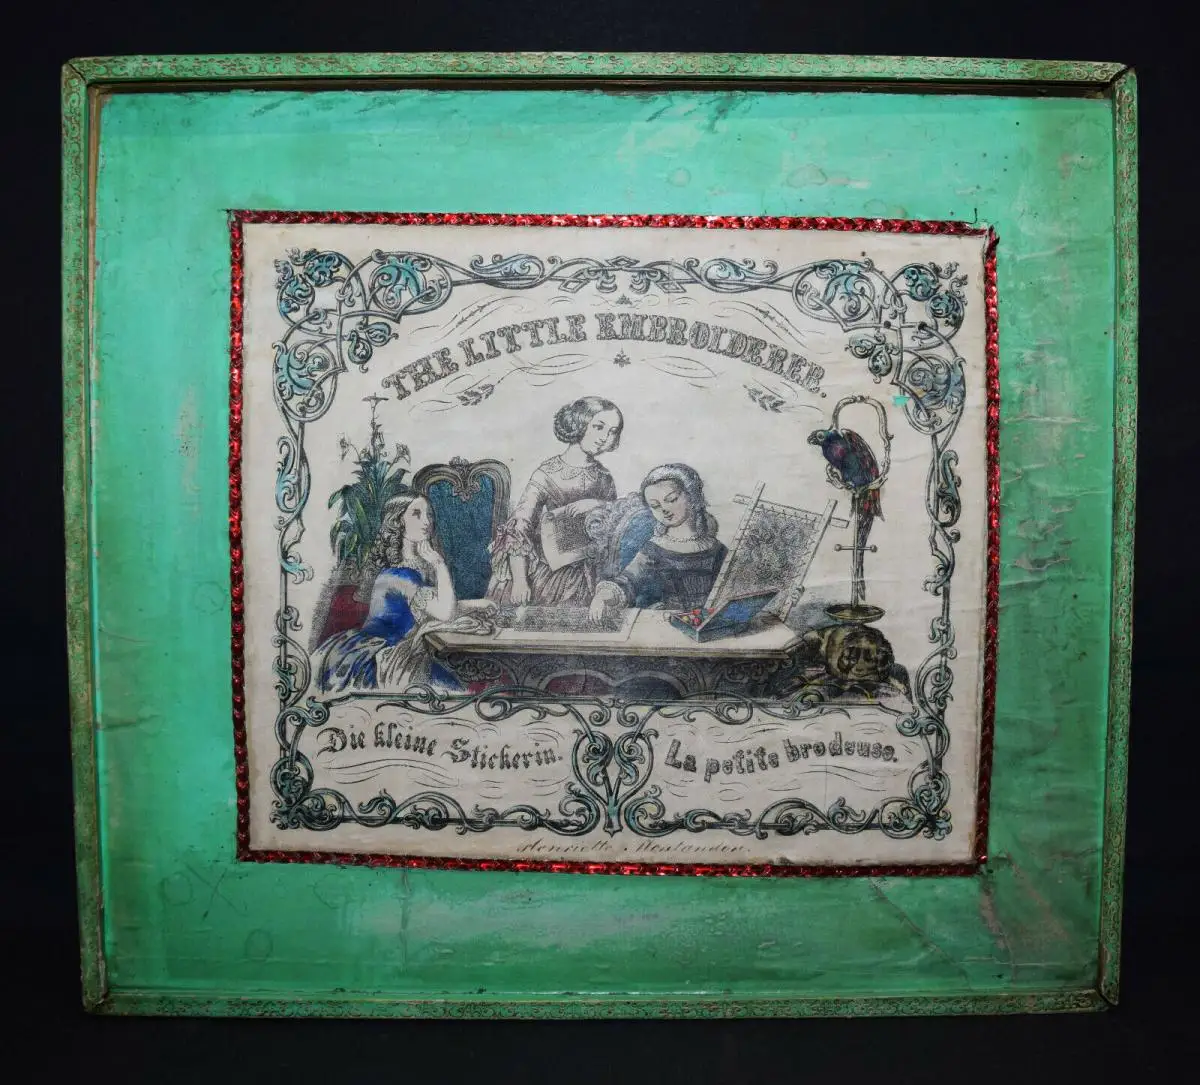 HANDWORK - EMBROIDERY ~ 1860 - The little embroiderer HANDARBEITEN STICKEREI 1